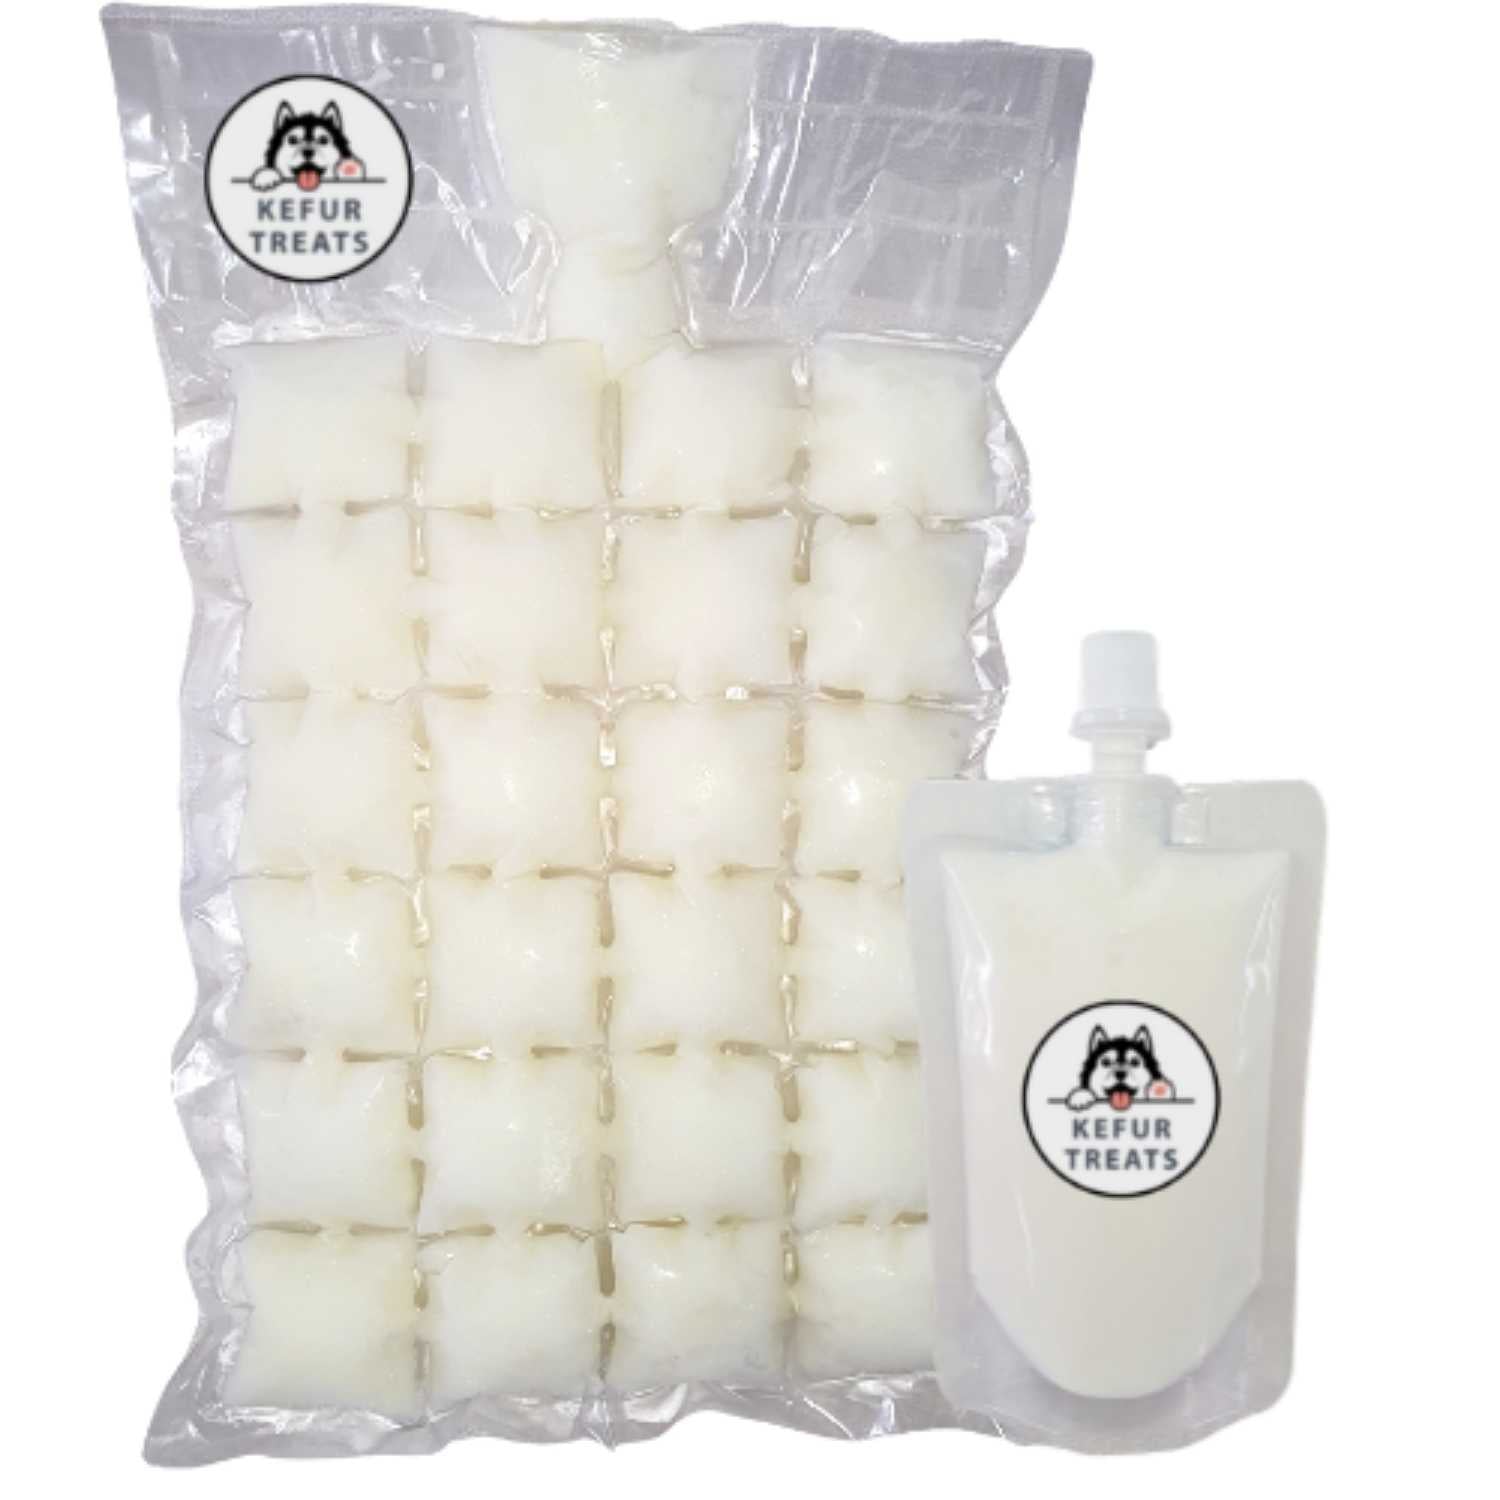 Milk Kefir Kefur Treats Starter Pack Liquid Pouch 100ml Frozen Pack 24 cubes Original